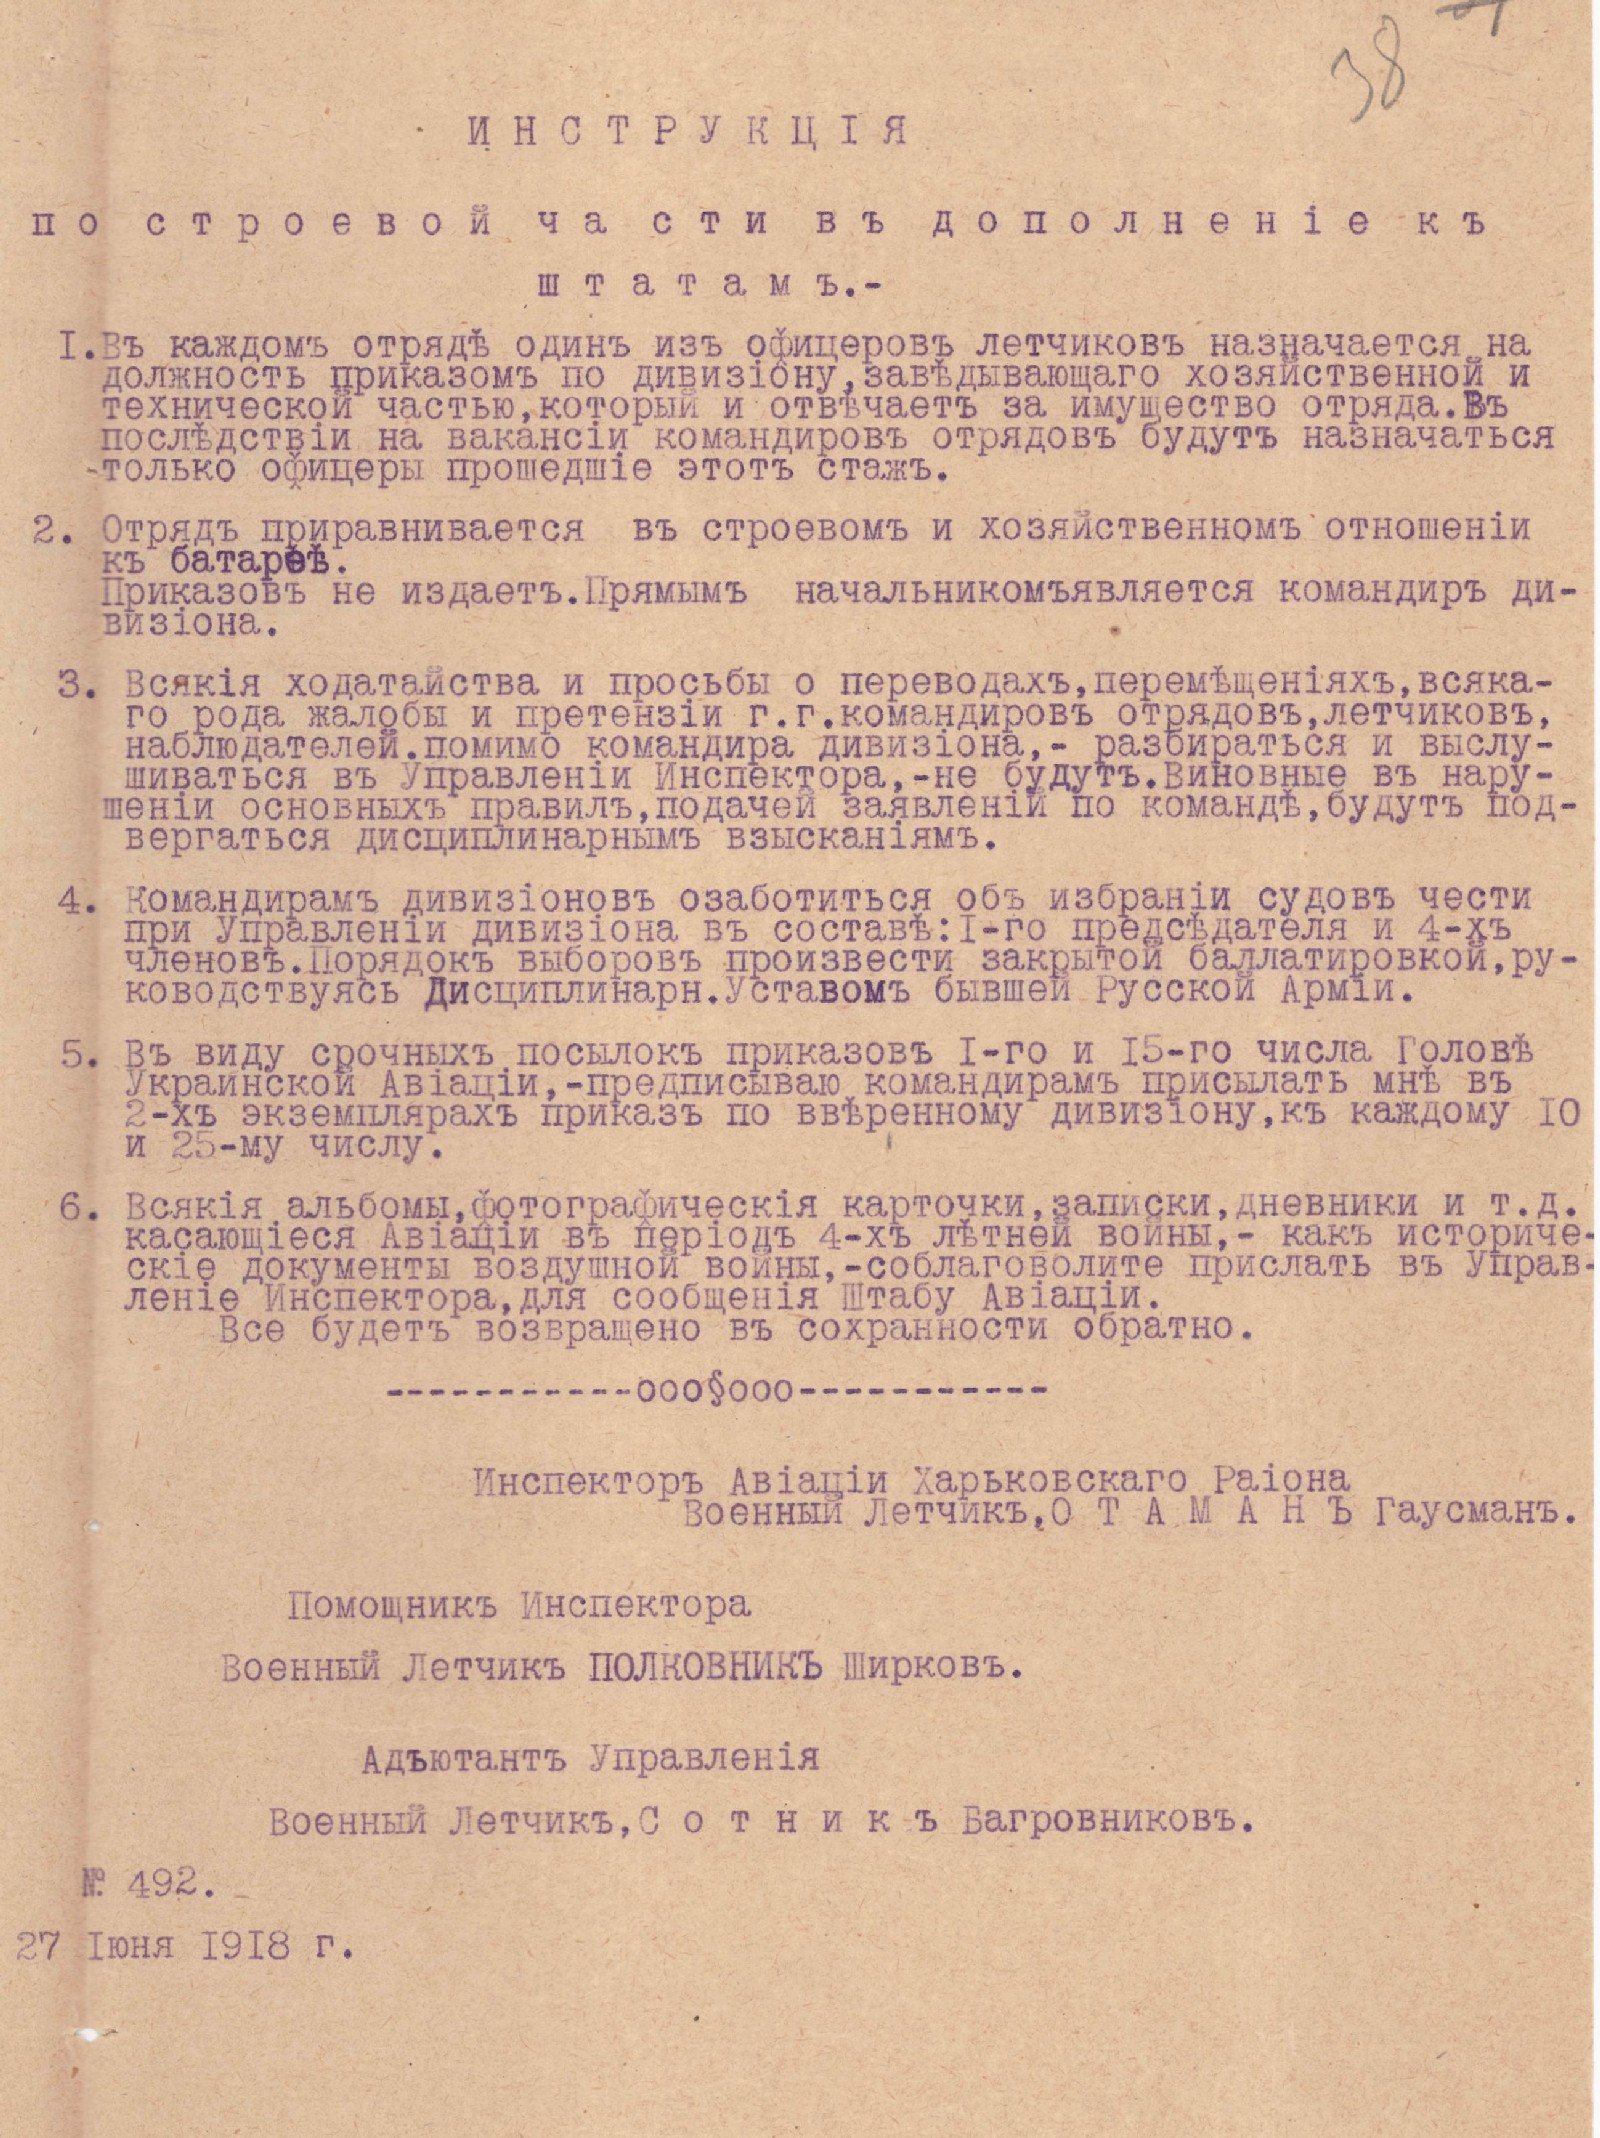 Інструкція із стройової частини авіаційних загонів, складена інспектором авіації Харківського району, військовим льотчиком, отаманом Т. Гаусманом. 27 червня 1918 р.